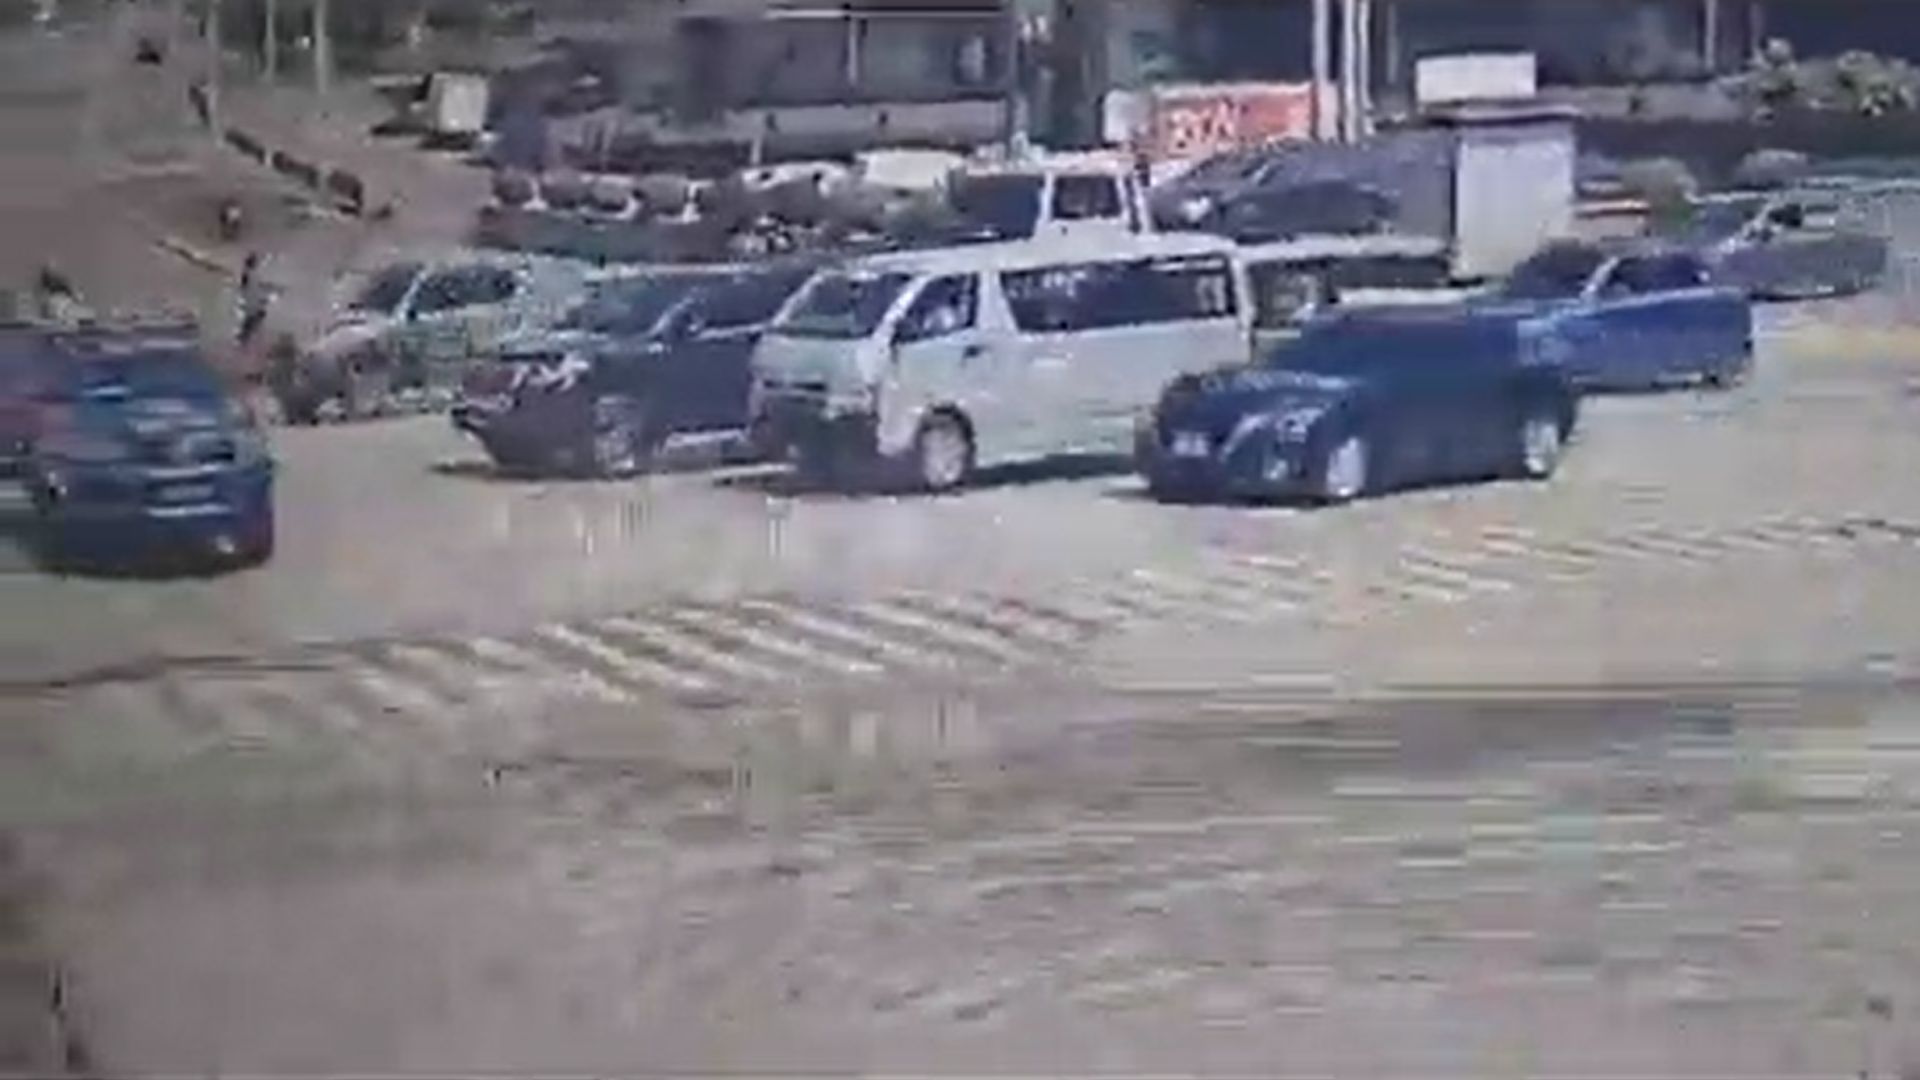 Un video registró el accidente de tránsito entre un vehículo liviano y una autopatrulla de la PNC en la Ciudad de Guatemala. (Foto Prensa Libre: captura de video)